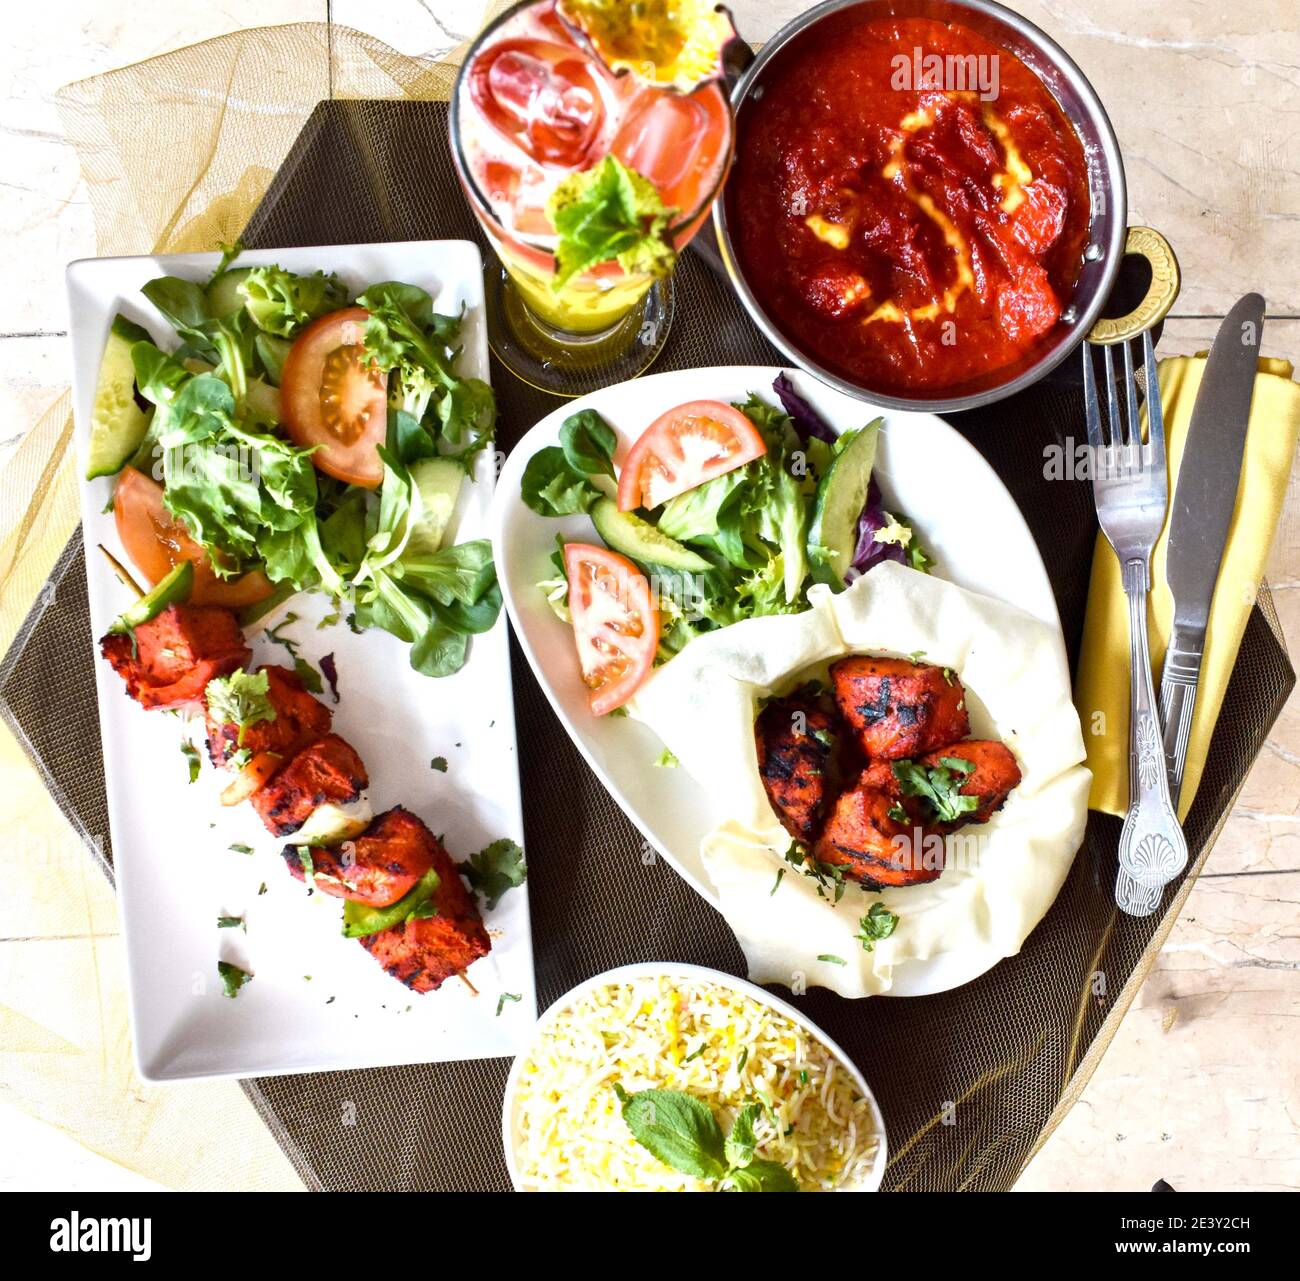 Indische Küche Essen Teller Curry Reis Kebabs Salat Stockfoto